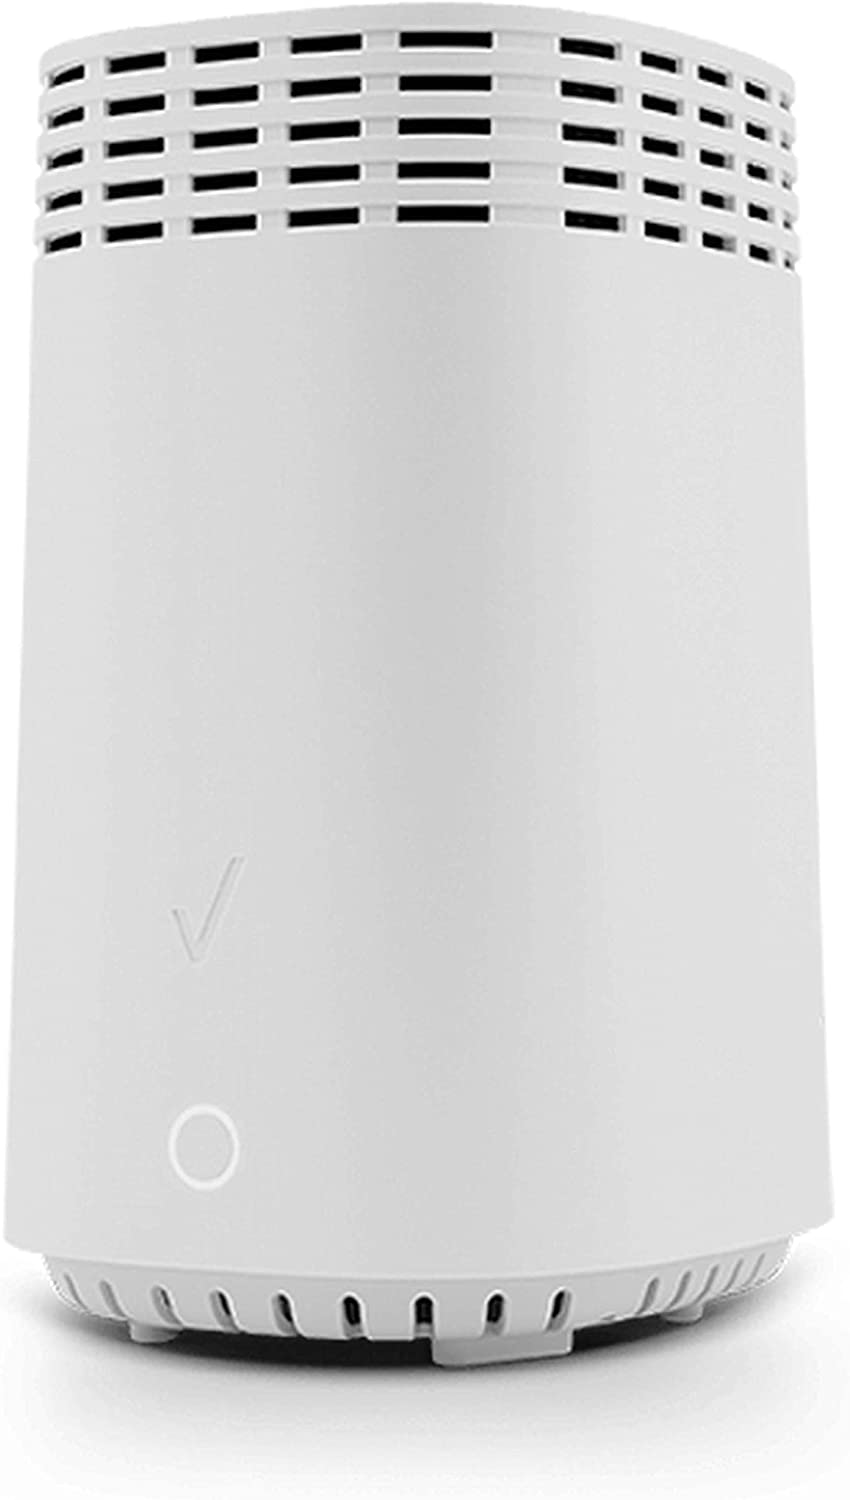 Verizon FiOS Home Router G3100